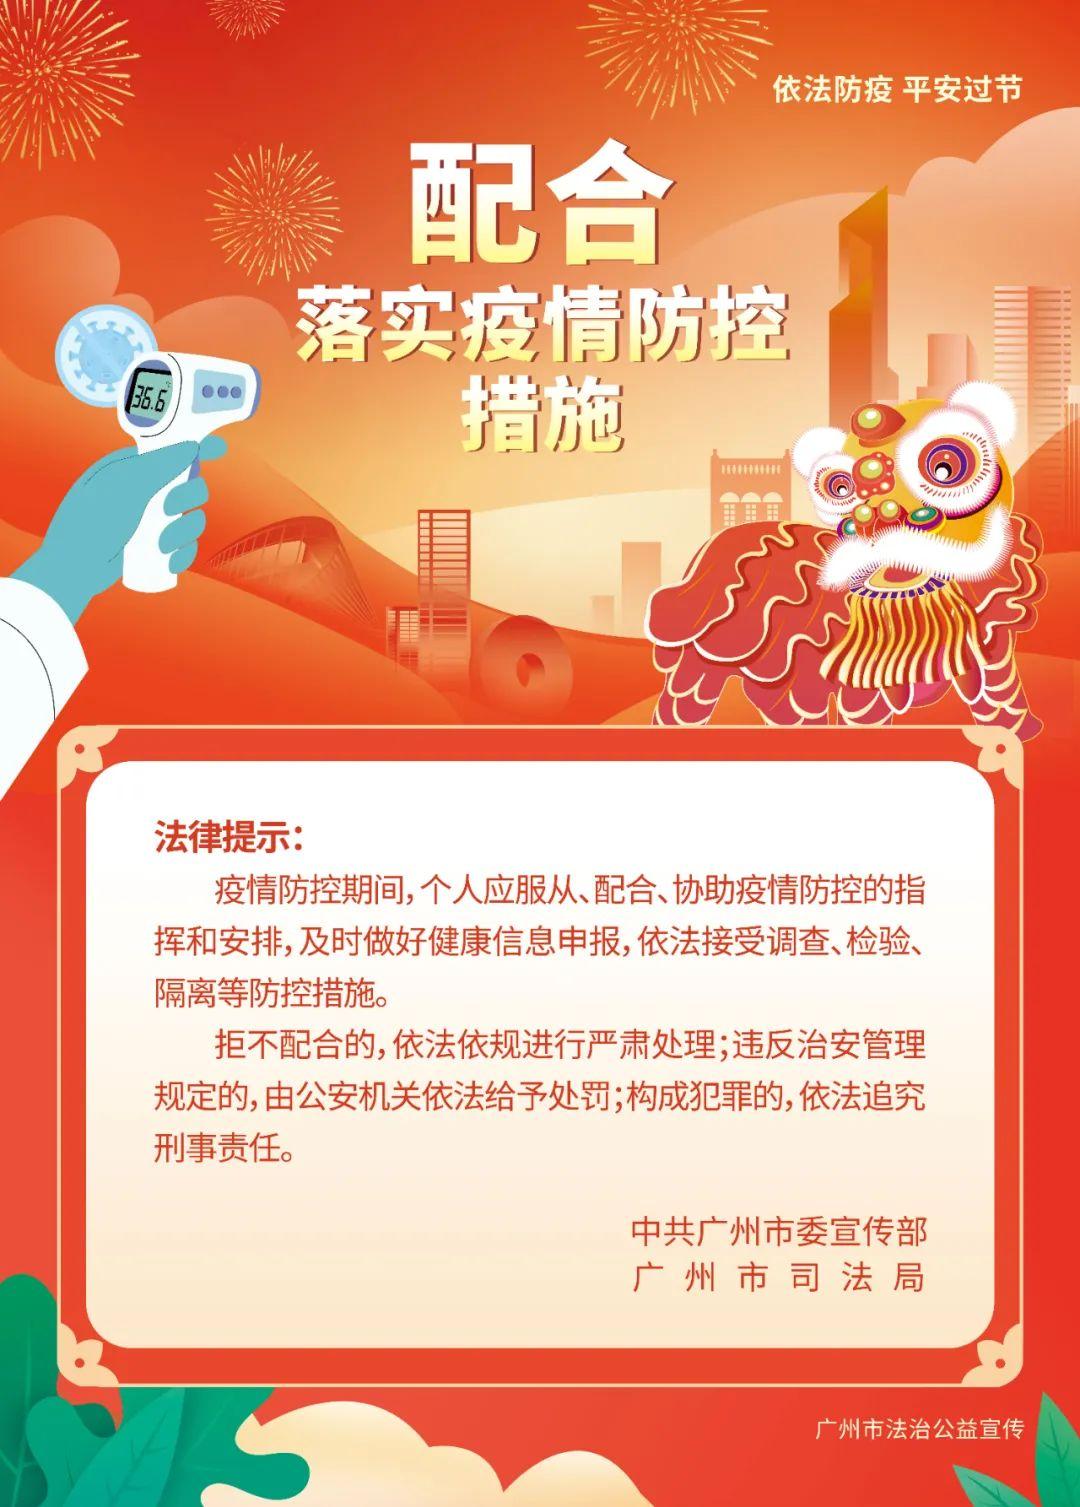 依法防疫，平安过节 | 广州市法治公益宣传海报，欢迎下载使用！